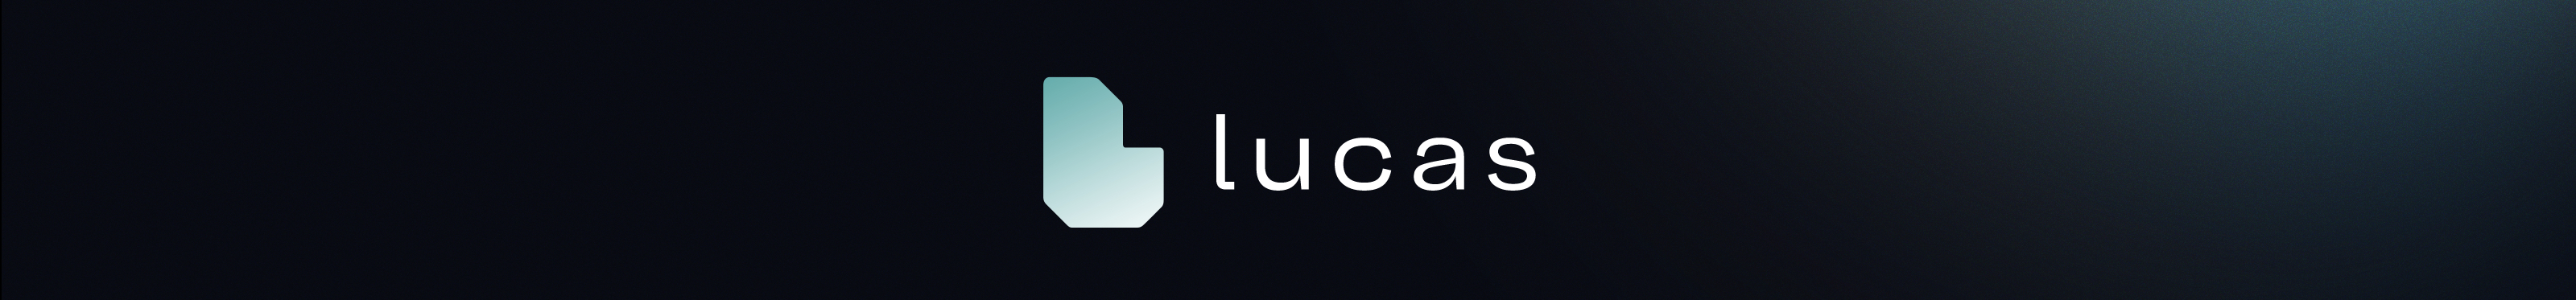 Lucas Trindade's profile banner